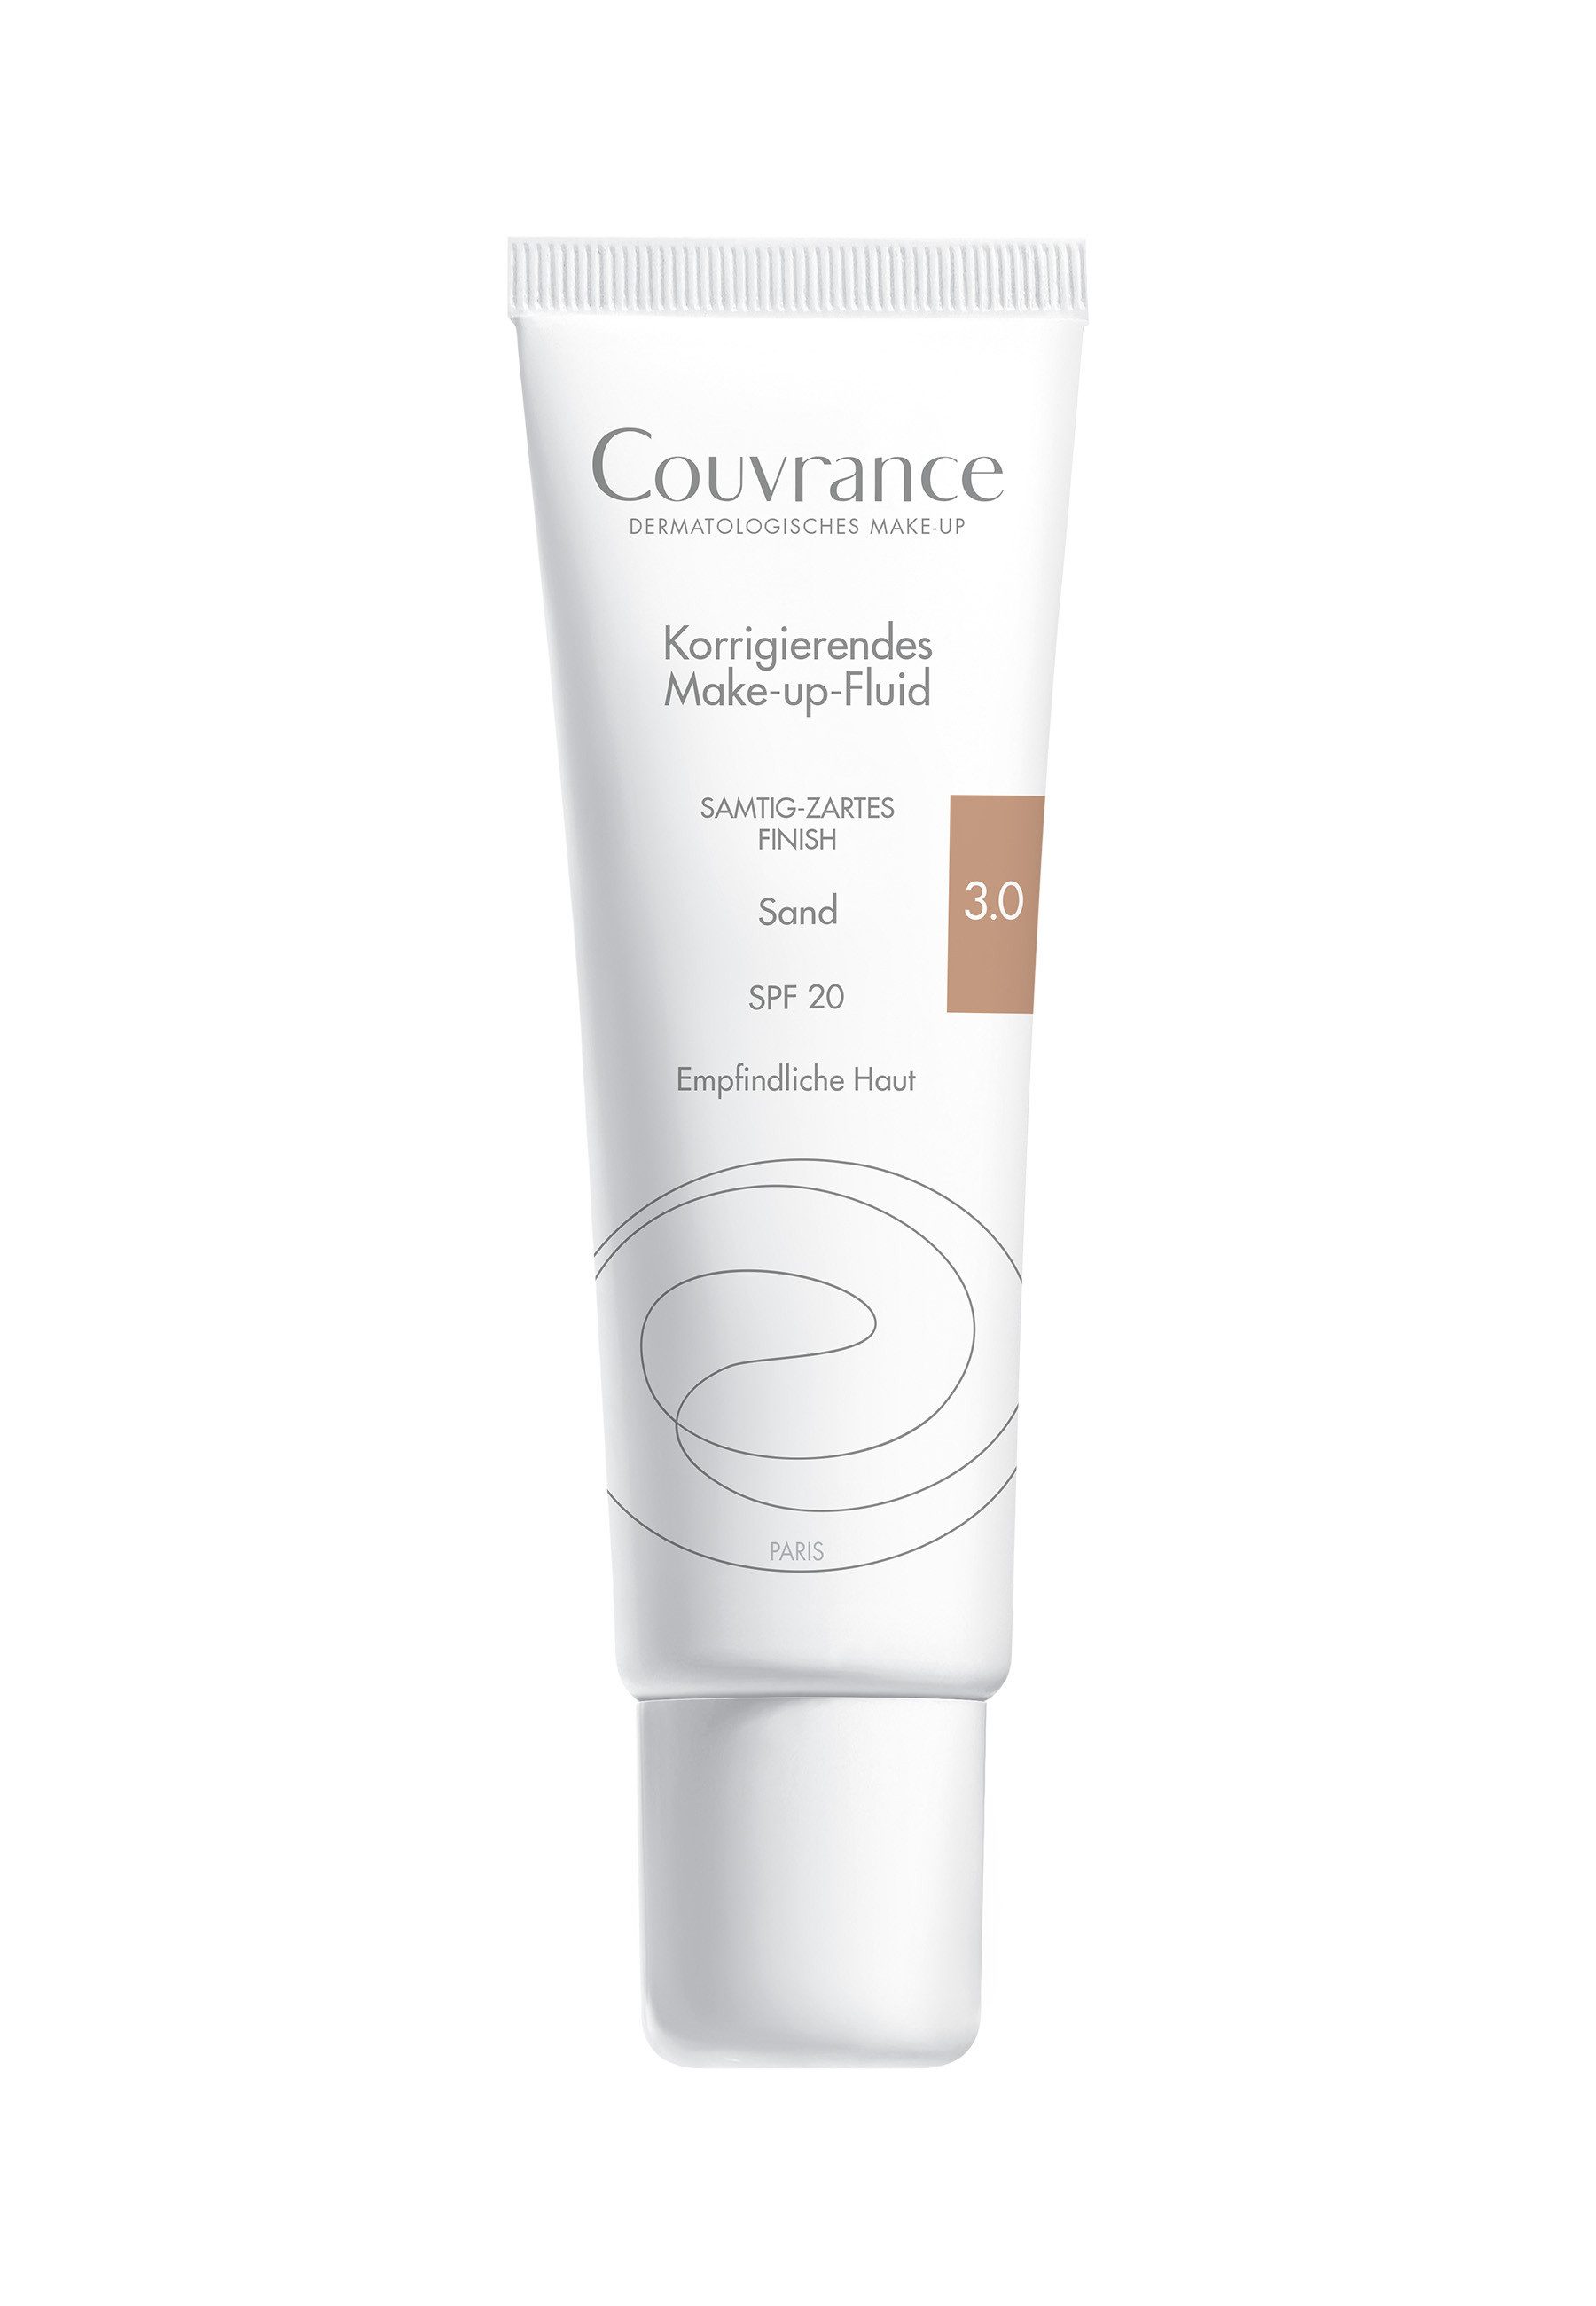 Avene Gesichtspflege Couvrance Korrigierendes Make-up Fluid Sand 3.0